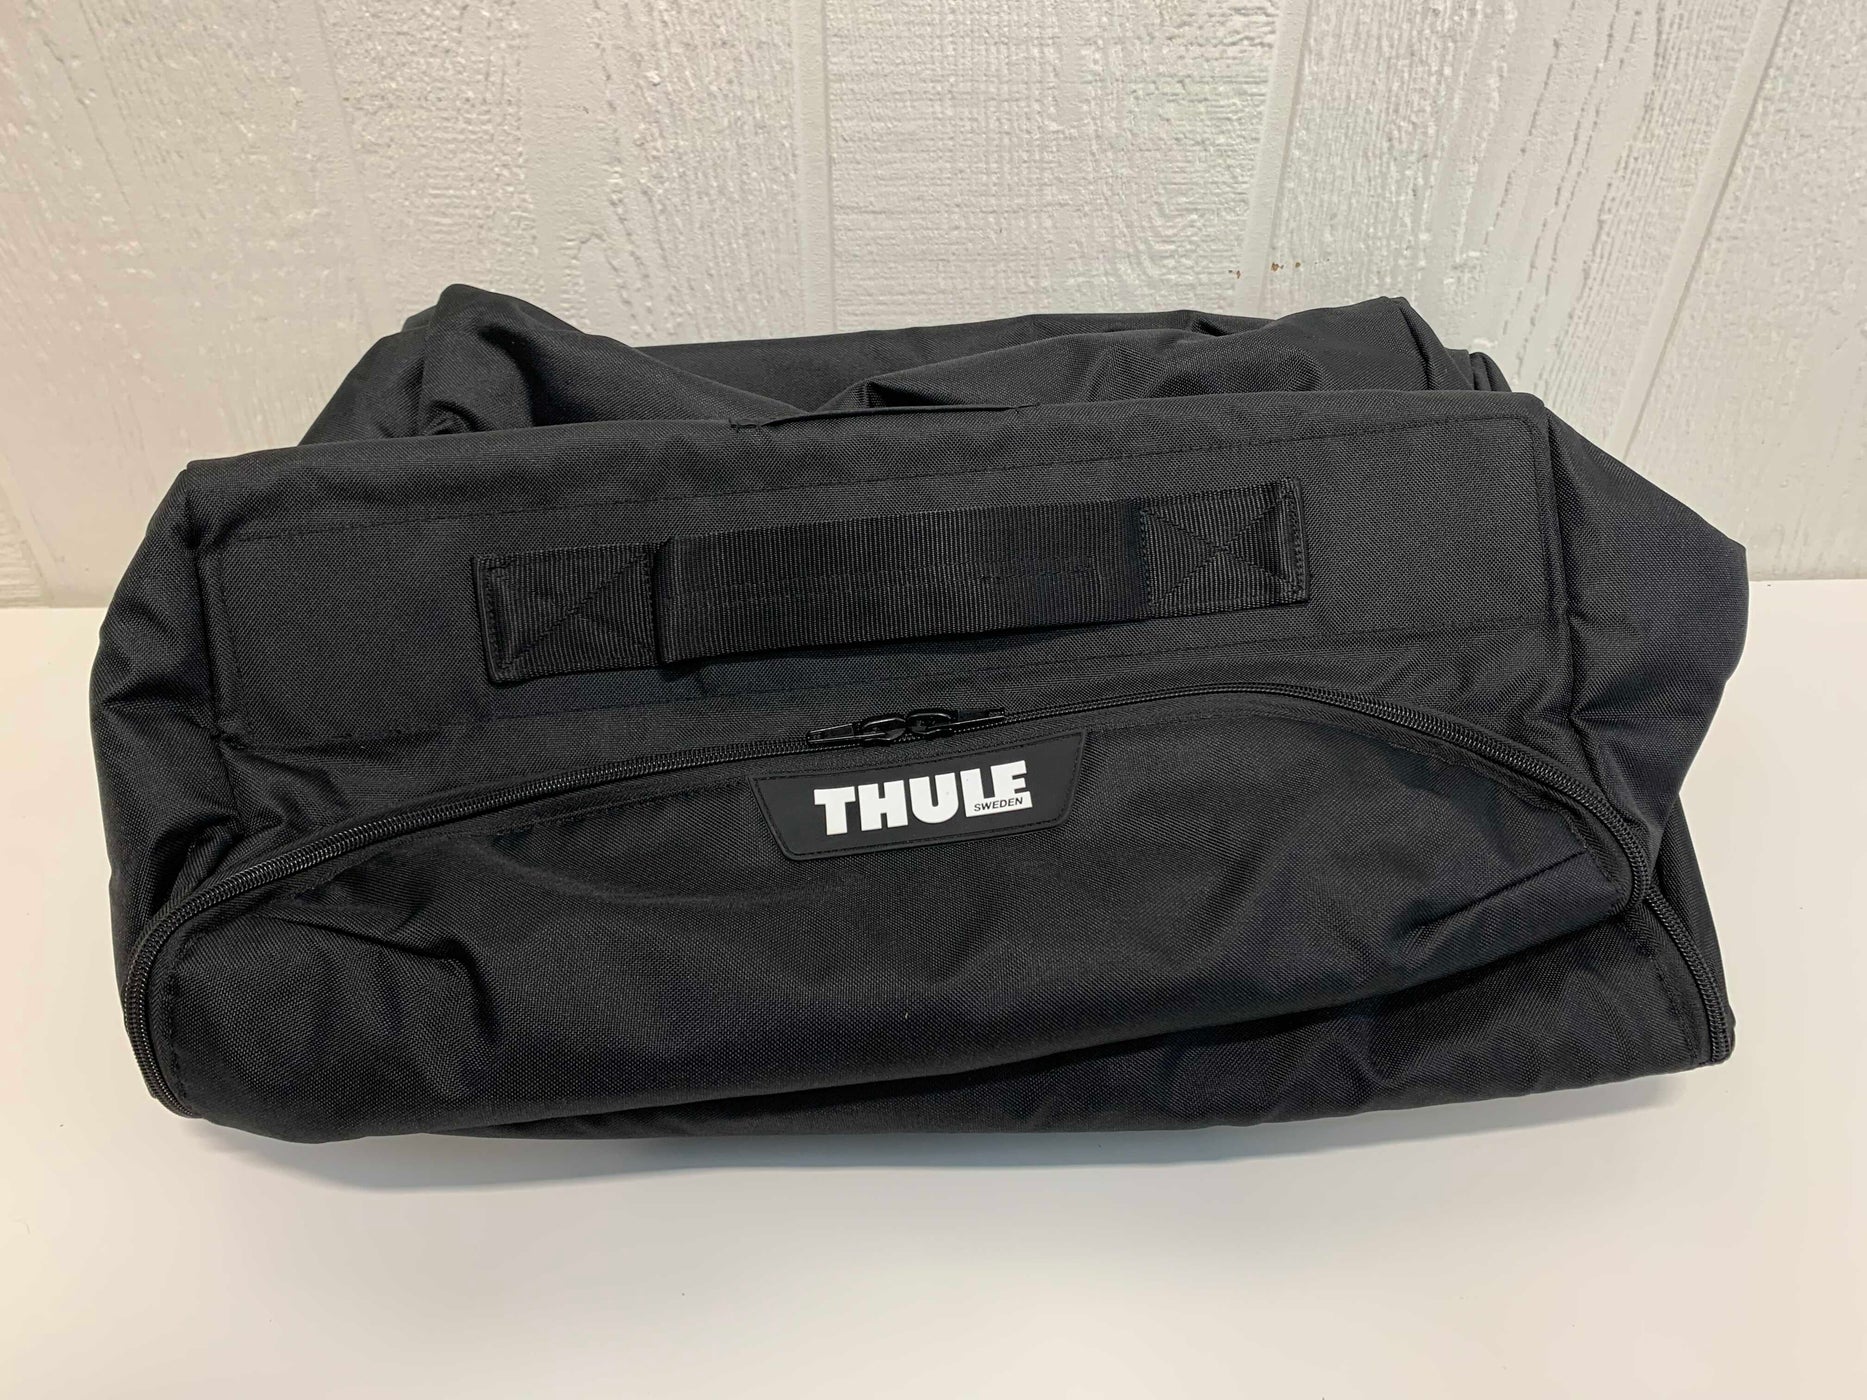 thule sleek travel bag